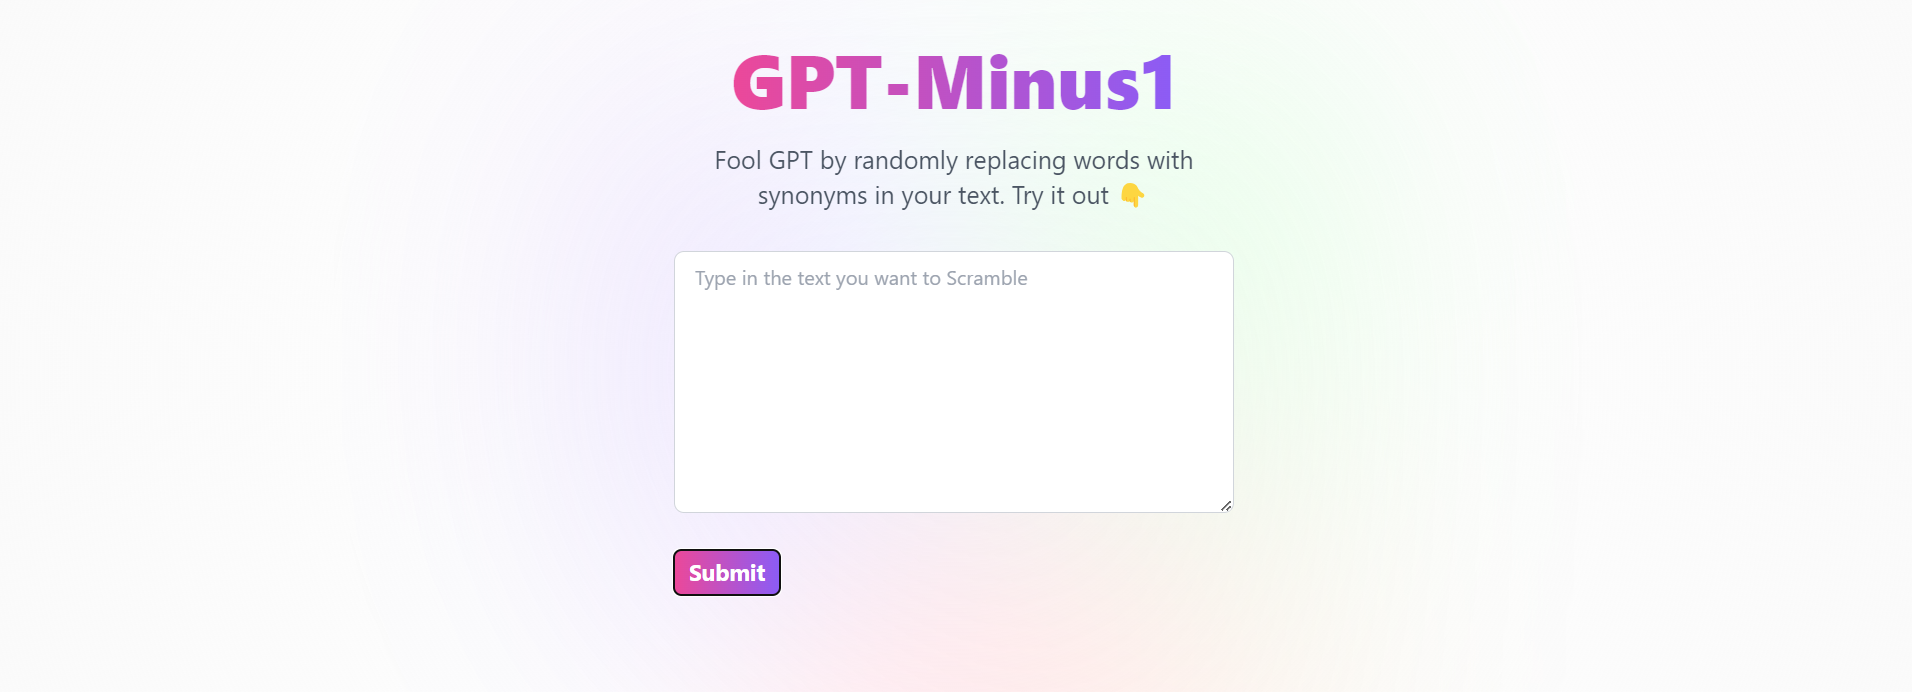 GPT – Minus1